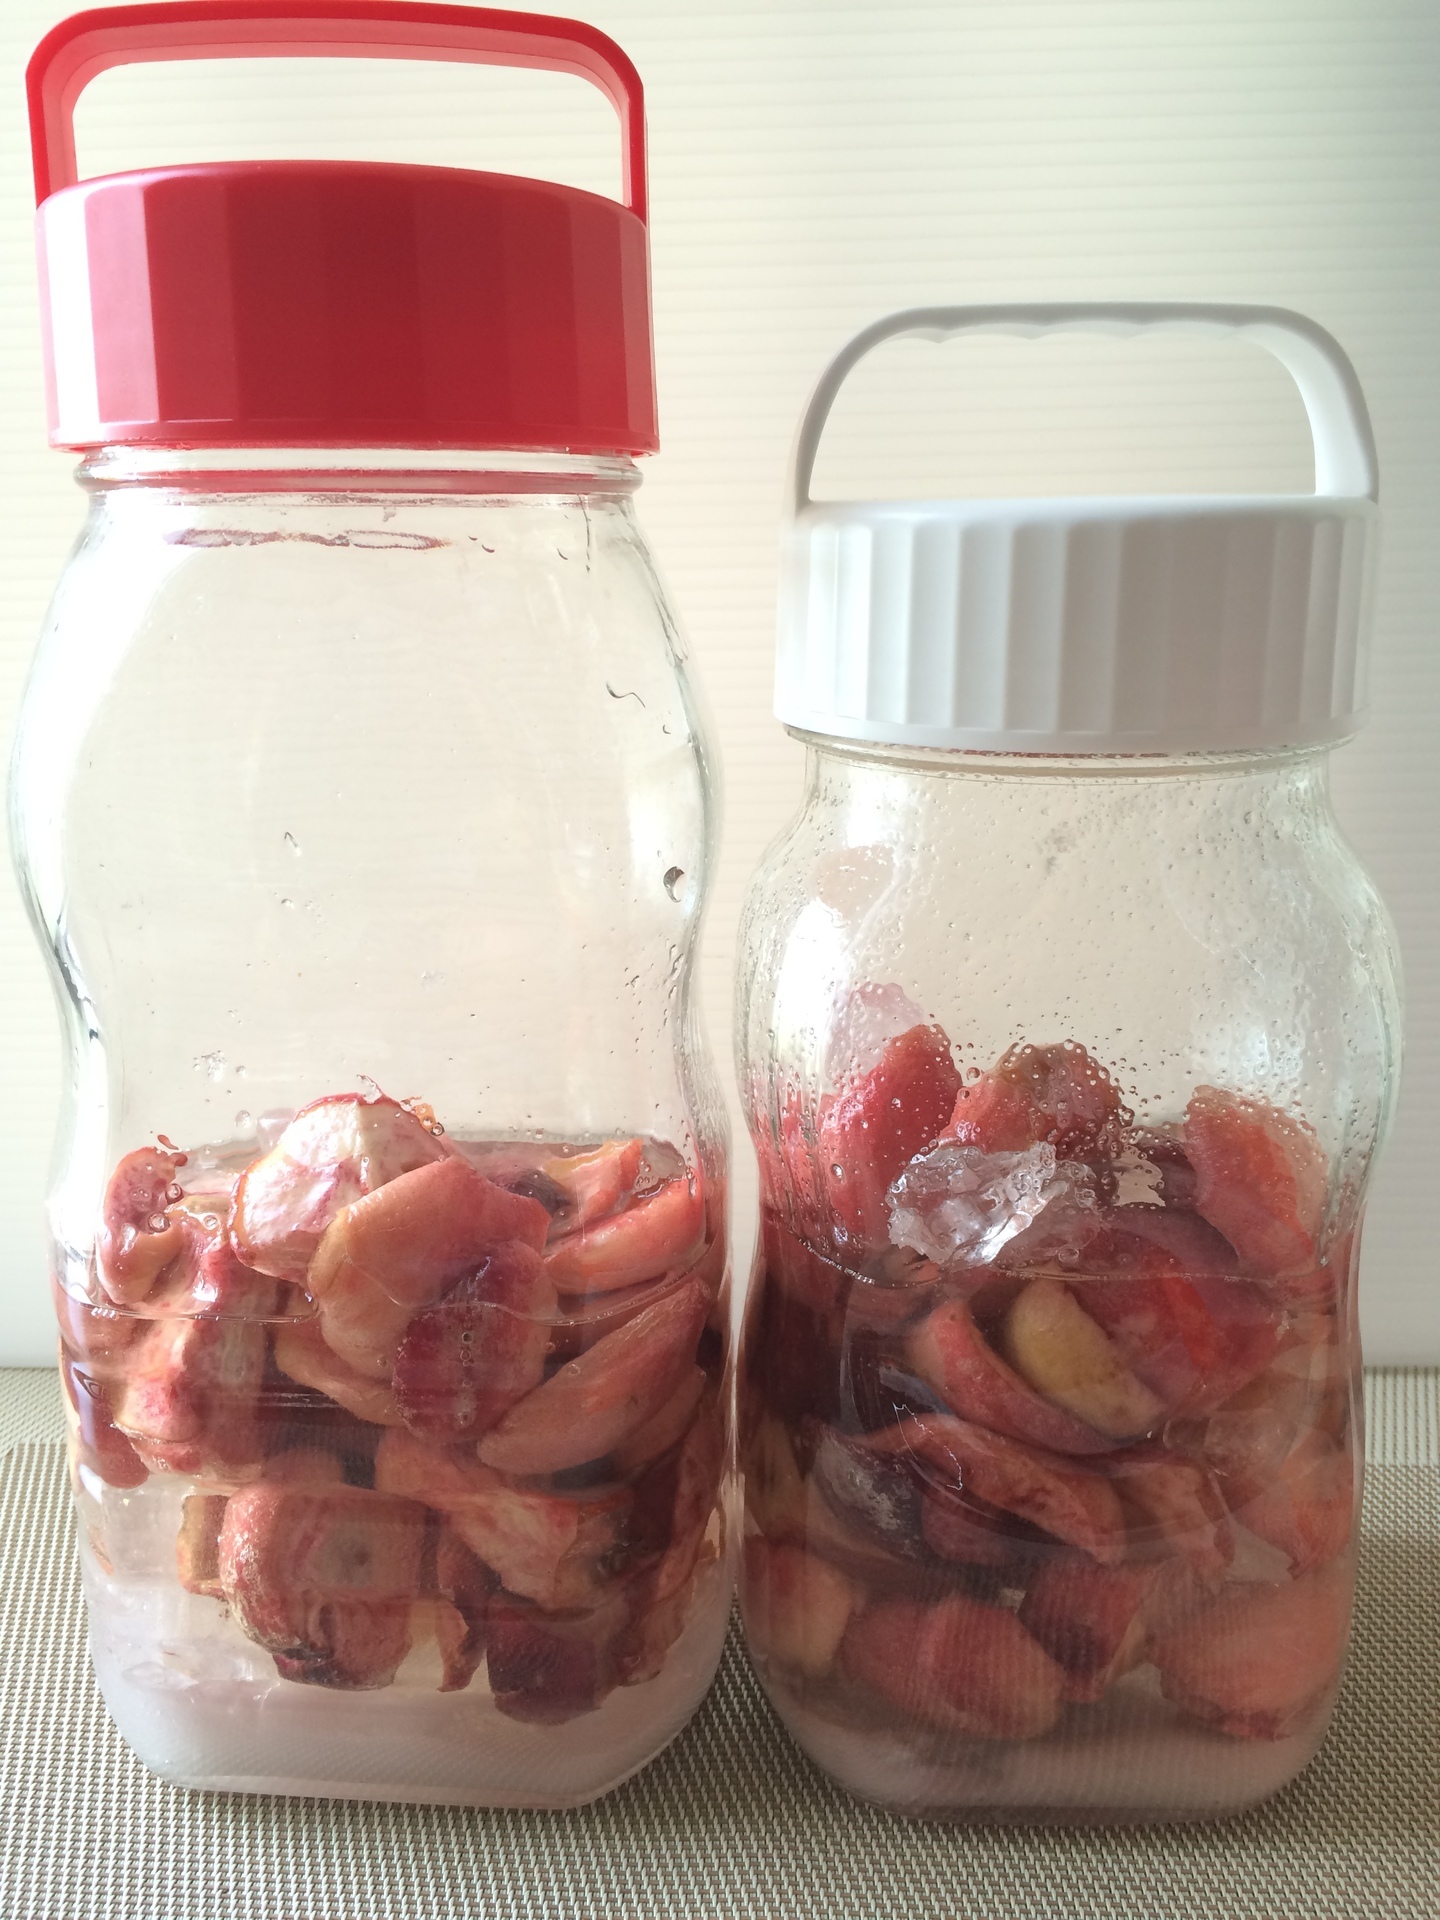 無農薬で熟成前の小さな桃を果実酒 シロップ コンポートに うさぎと発酵